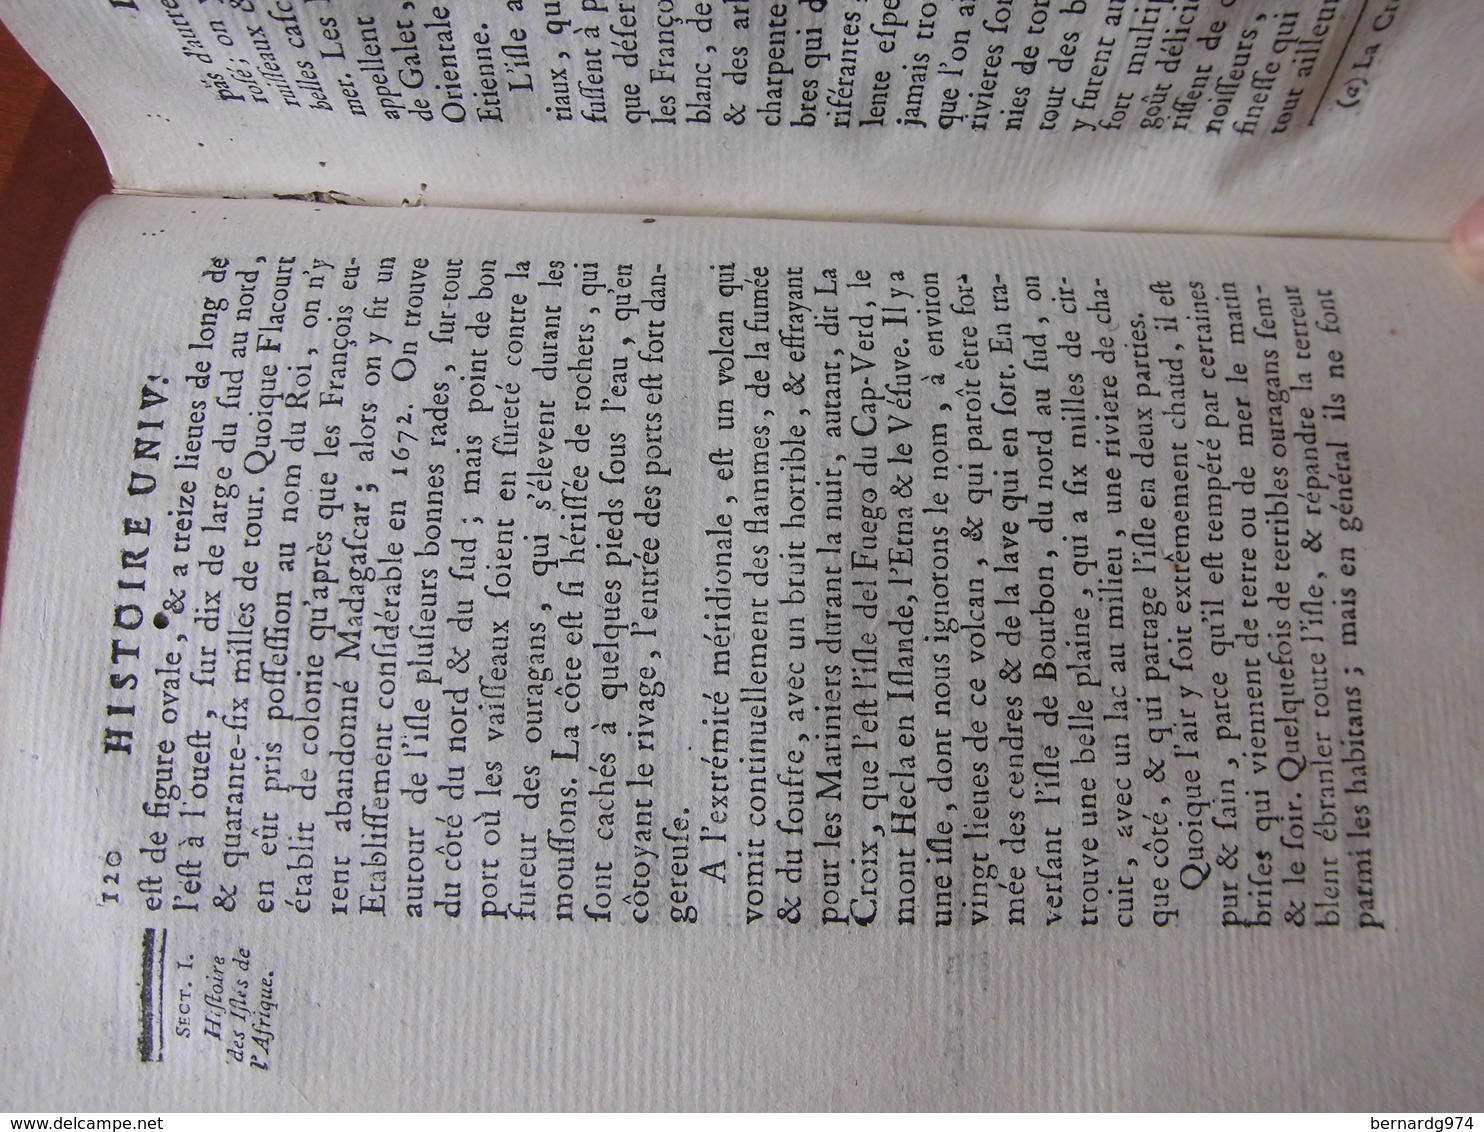 Madagascar, Bourbon (Réunion), Ile Maurice (Ile de France)  : rare ouvrage de 1784 avec carte dépliante des Iles